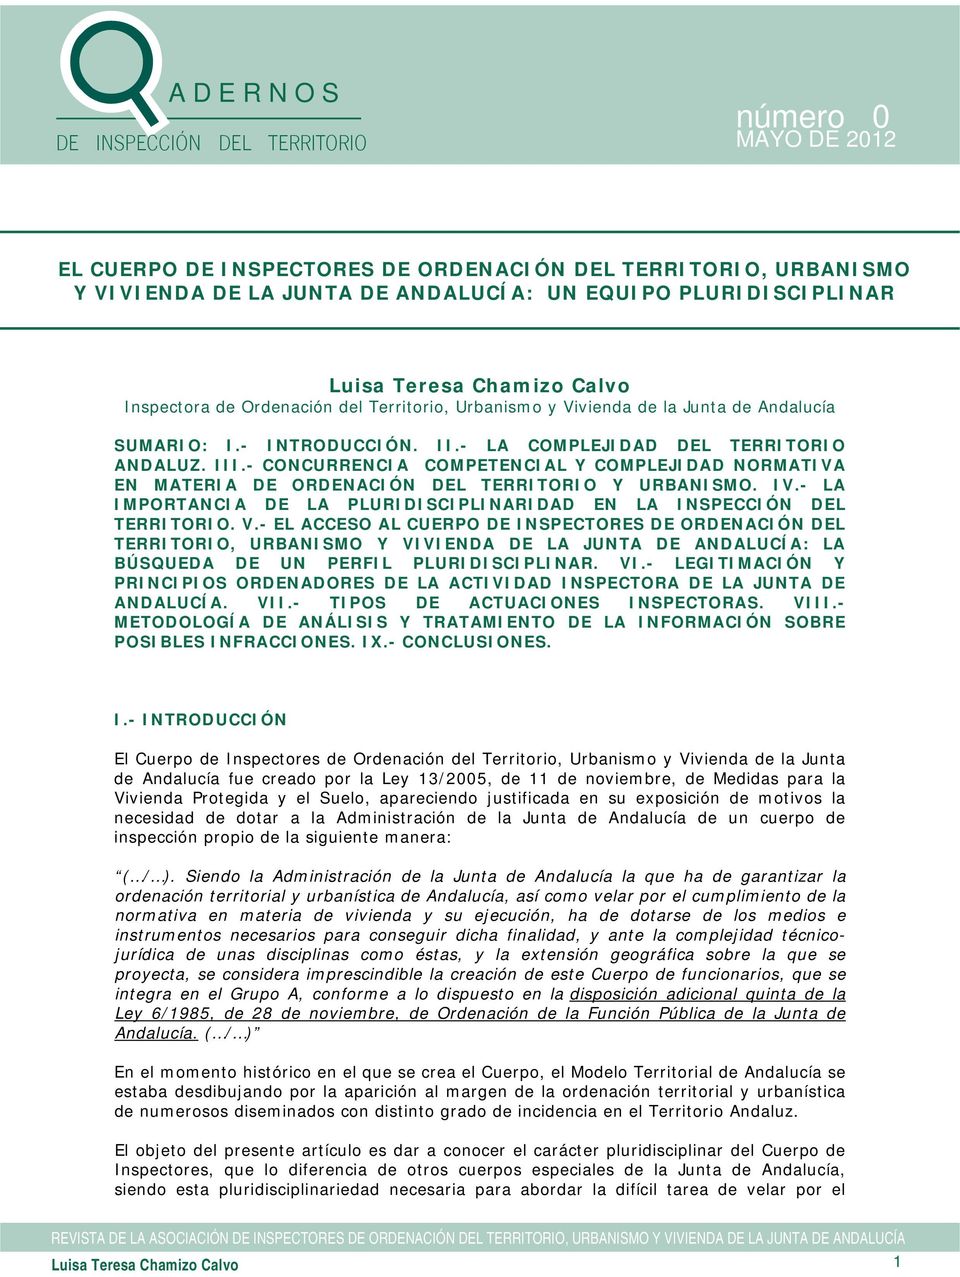 IV.- LA IMPORTANCIA DE LA PLURIDISCIPLINARIDAD EN LA INSPECCIÓN DEL TERRITORIO. V.